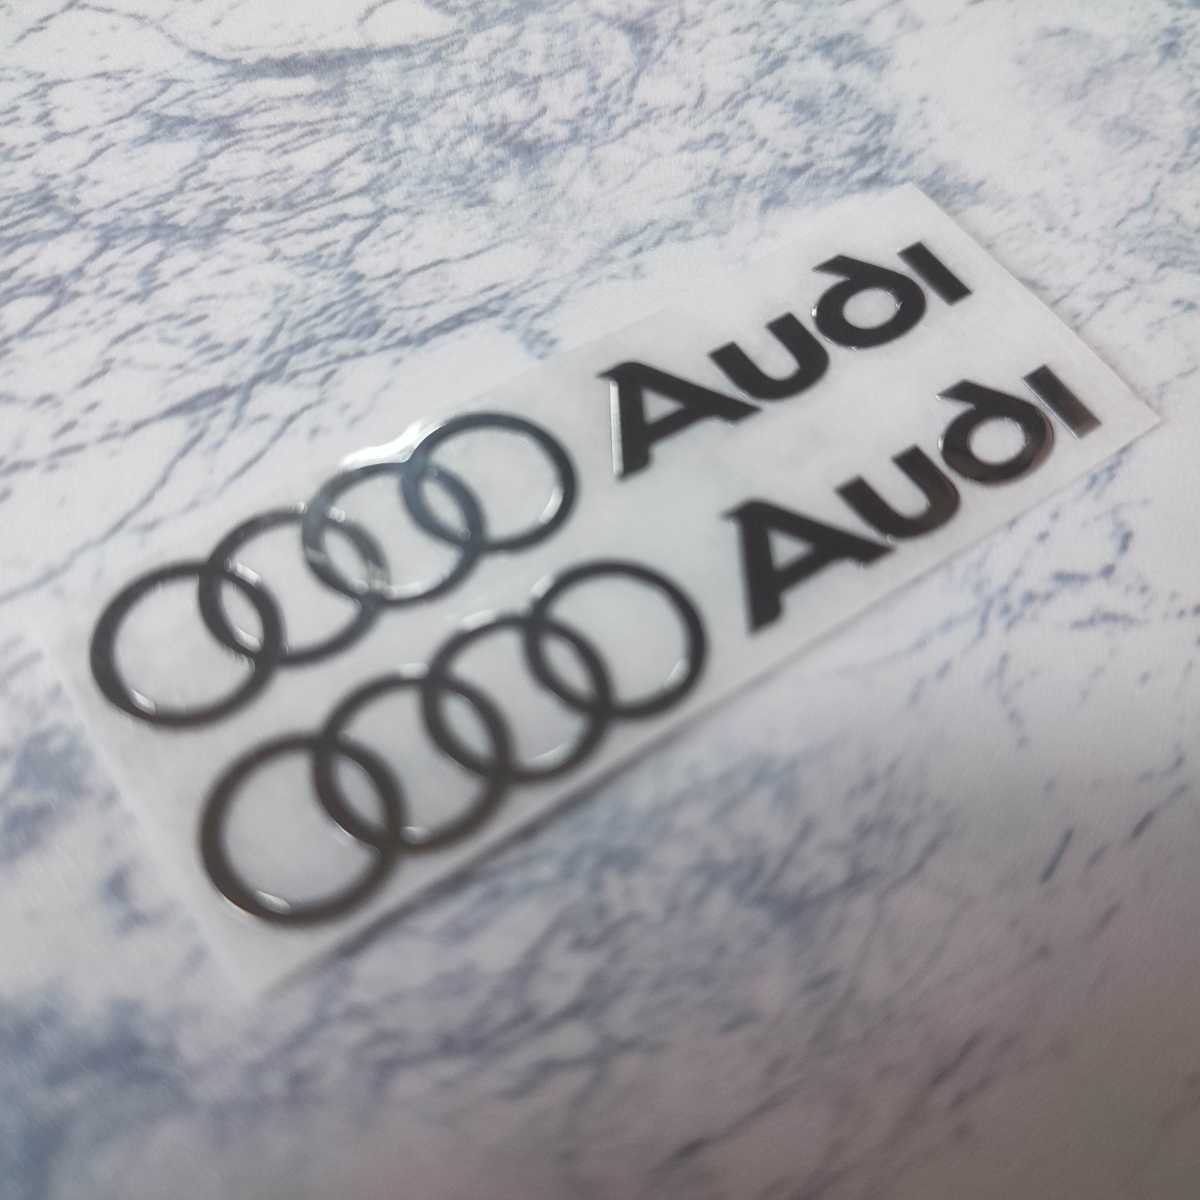 Audi ( большой ) металлизированный style стикер 2P# Audi S-line RS A1 A3 A4 B5 B6 B7 B8 A5 C5 A6 C6 c7 A7 A8 A1 V8 Q3 Q5 Q7 SQ5# купон отметка 